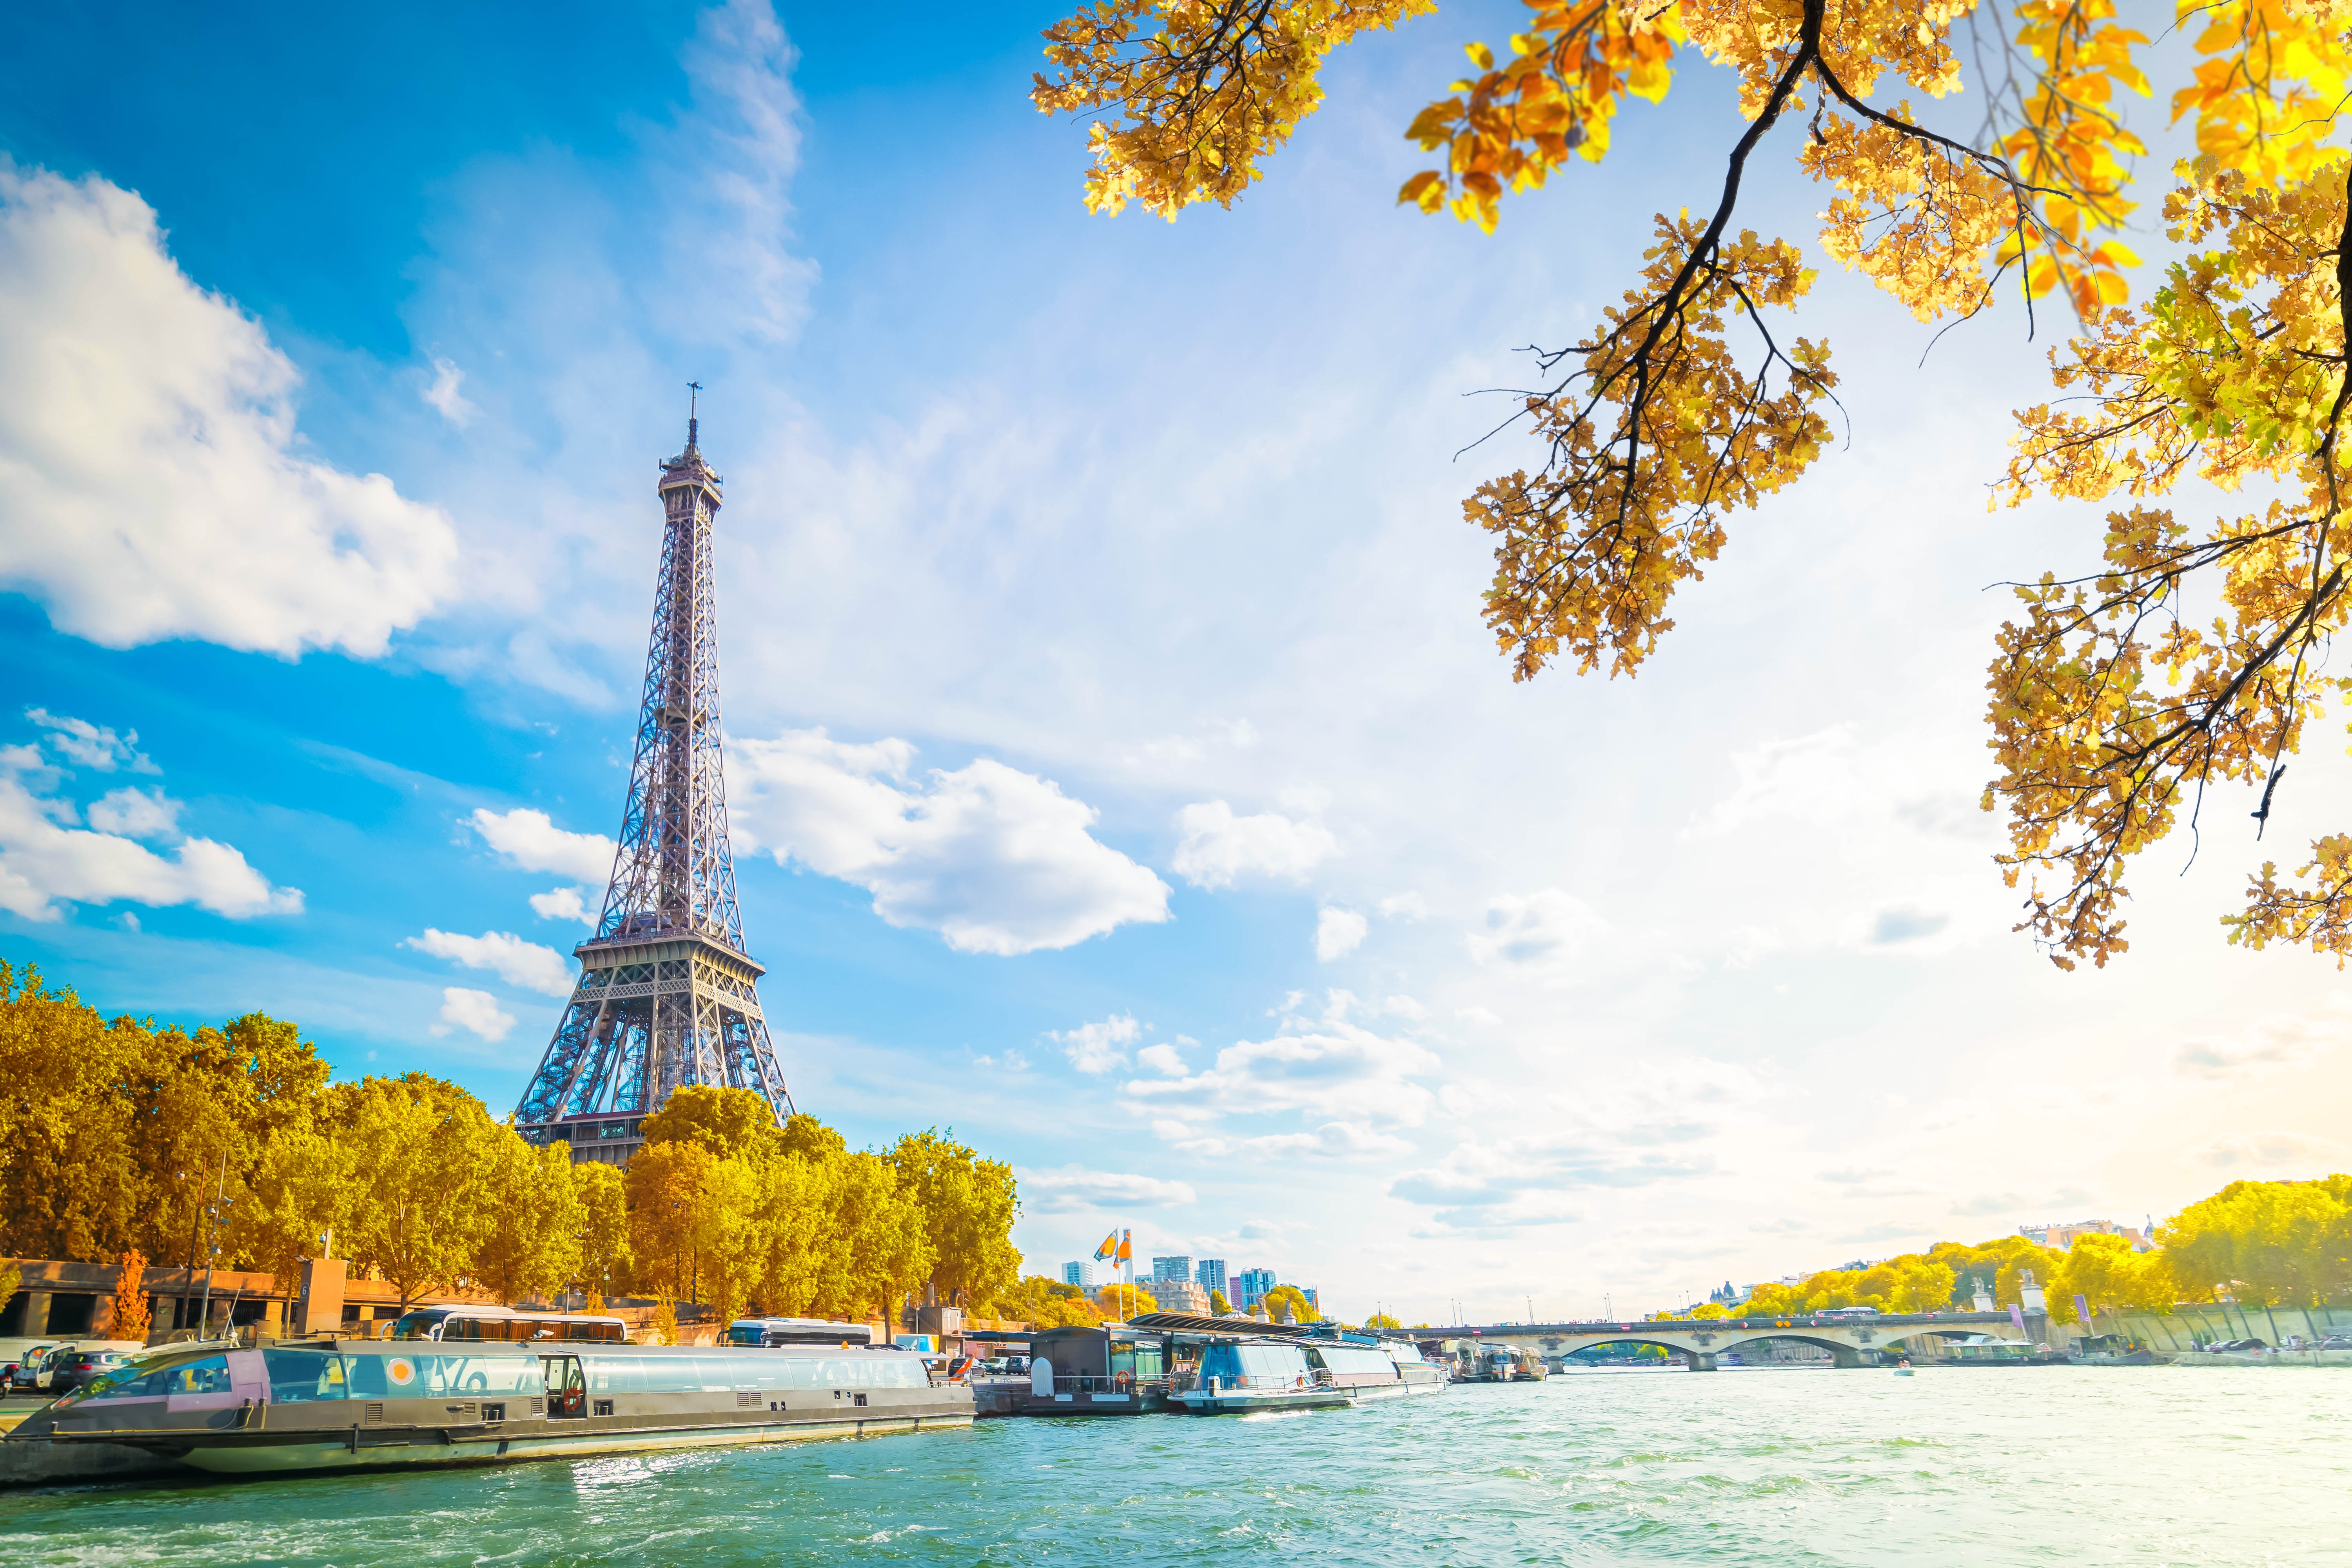 Вид на побережье Парижа, в стране можно получить гражданство и паспорт Франции по рождению, не через недвижимость